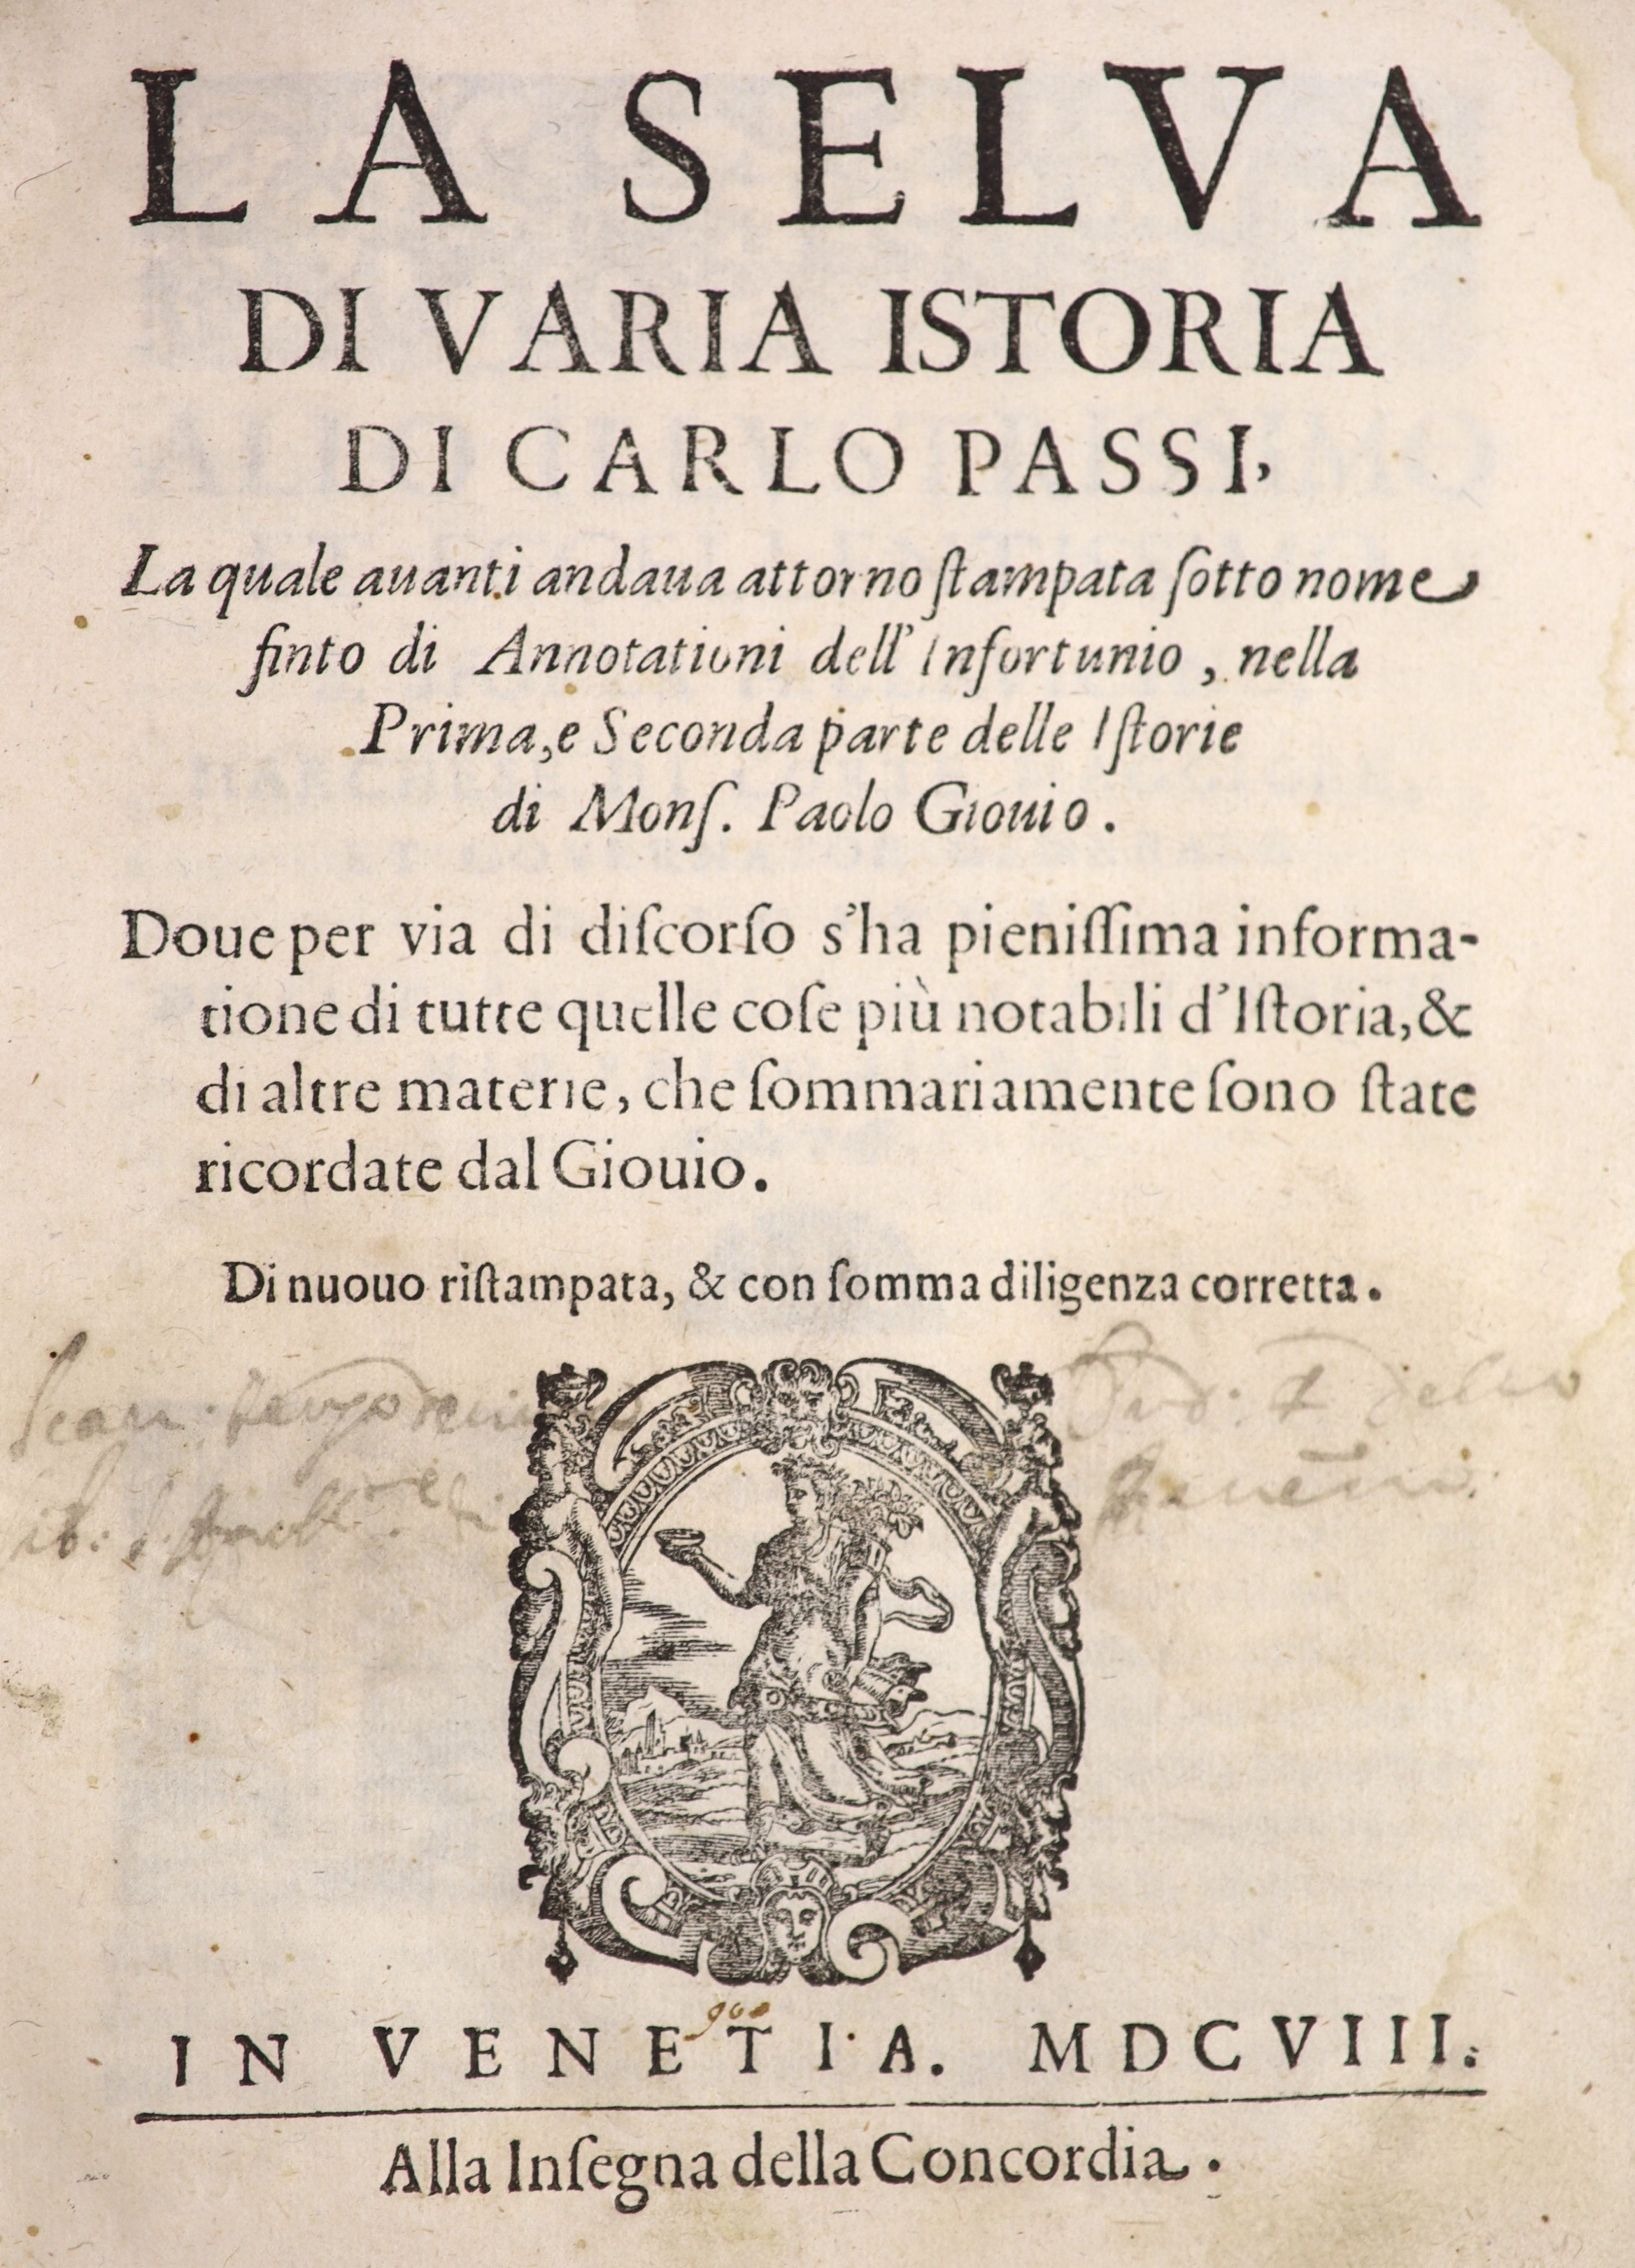 Passi, Carlo - La Selva di Varia Istoria, qto, limp vellum, pagination errors (jumps page 33 to 36, and others), Venice 1608